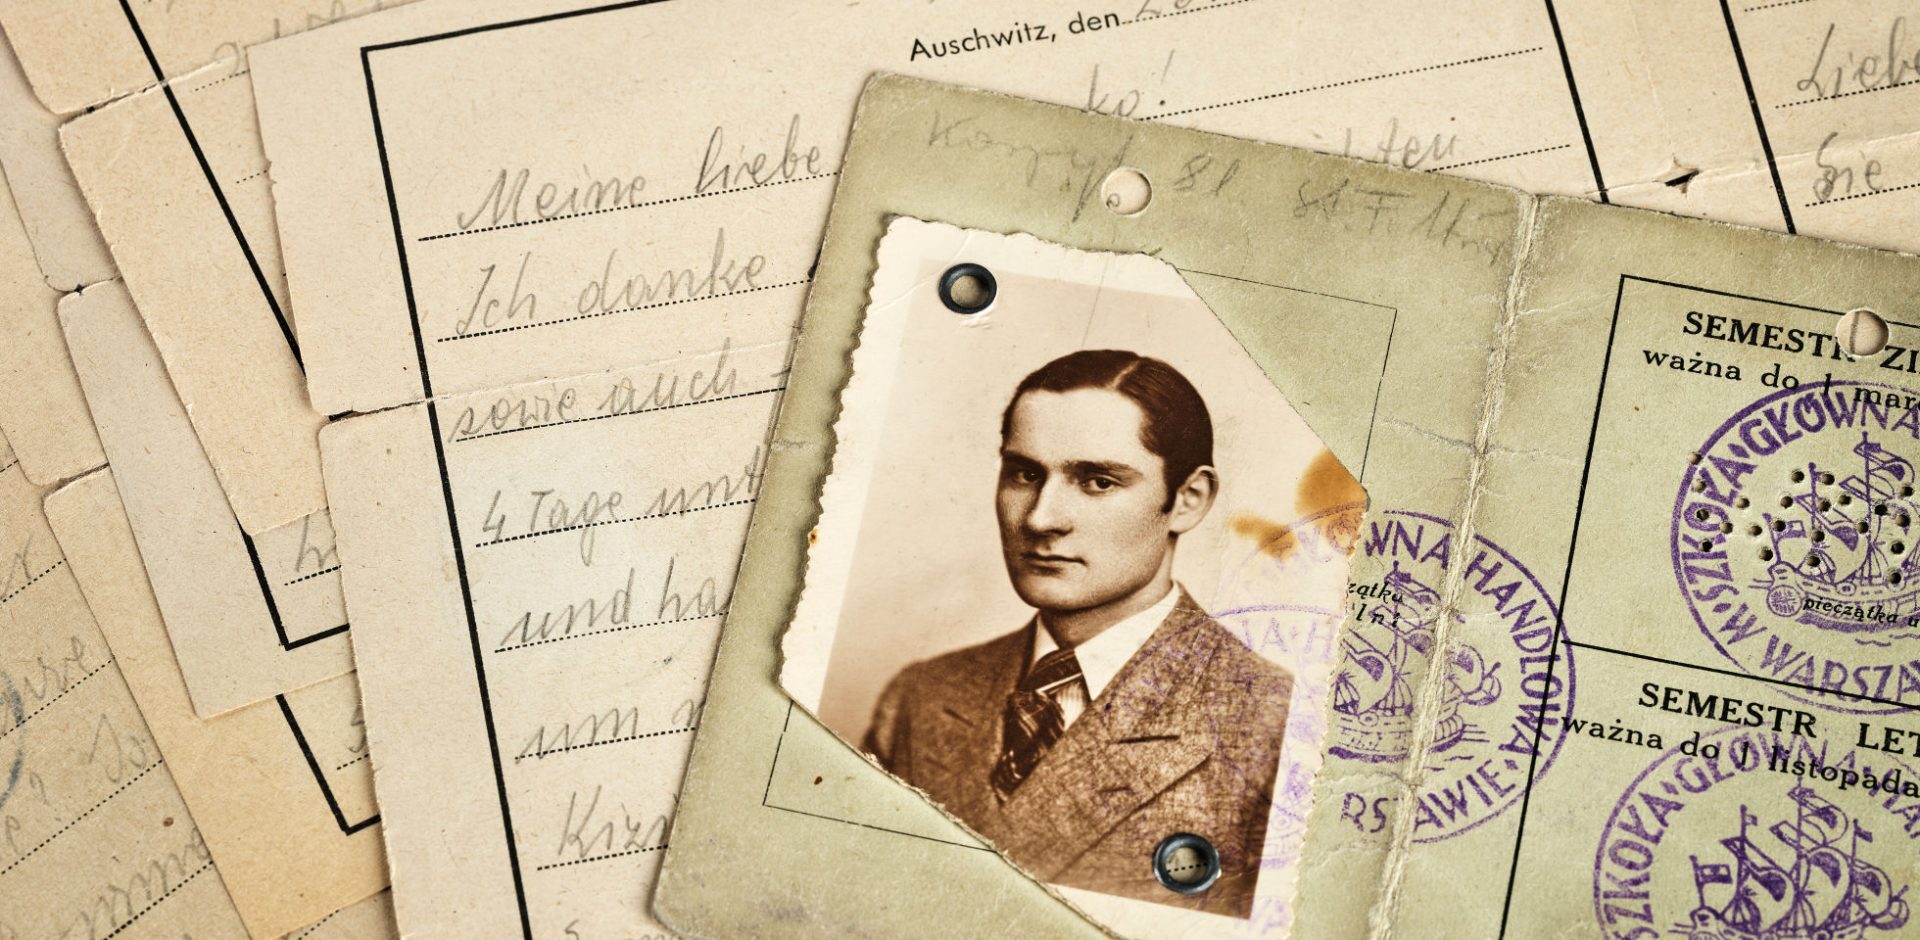 Porträtt på Czesław Aredzki från Czesławs identifikationshandling, mot bakgrund av brev.